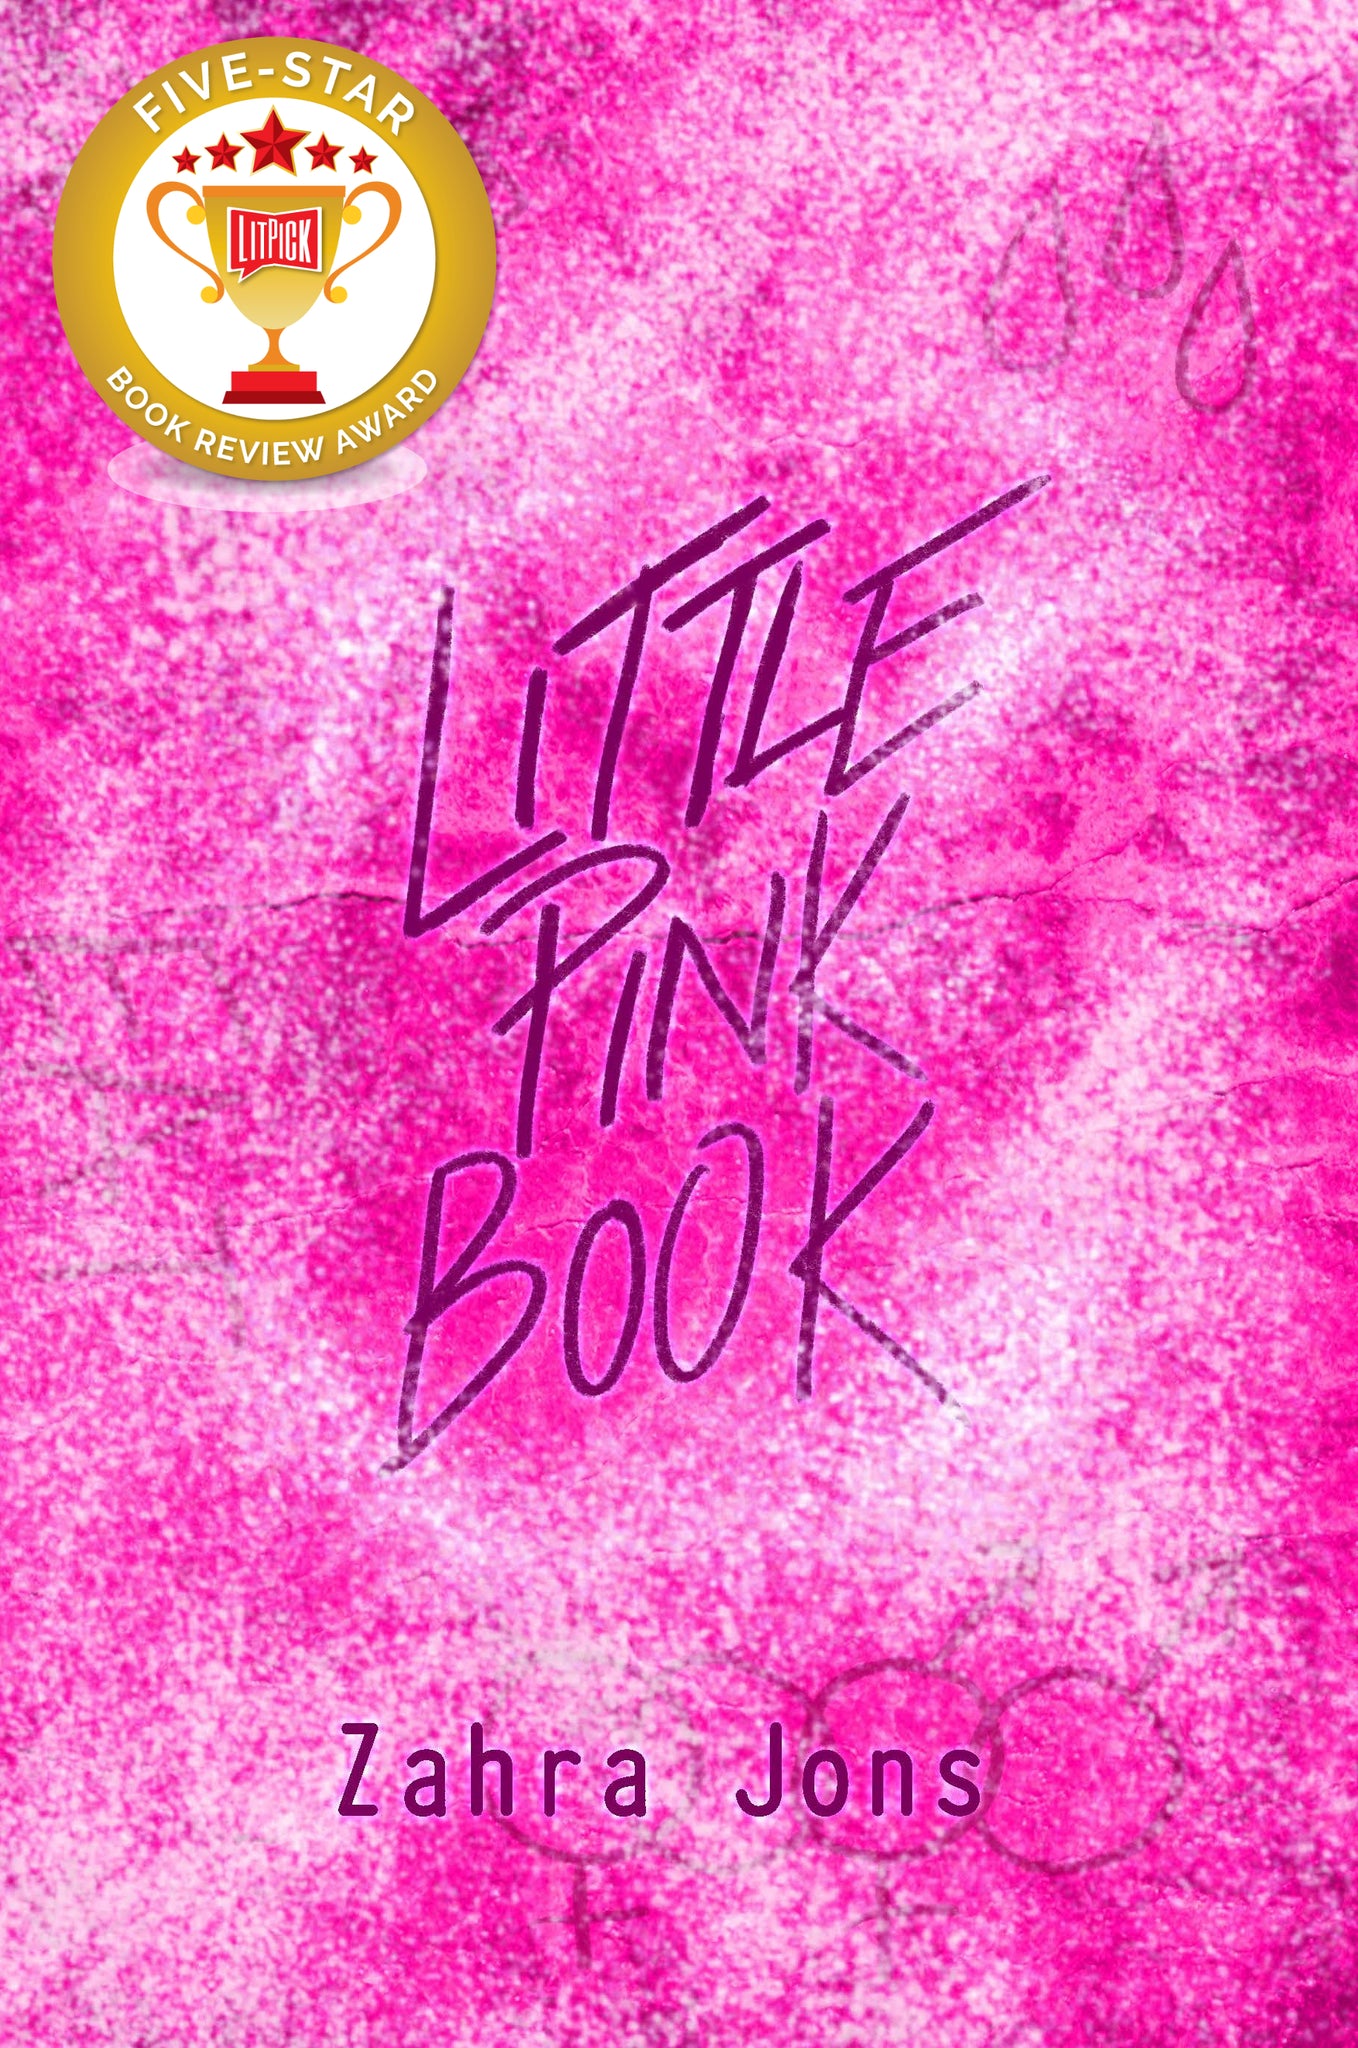 Little Pink Book - Trade Paperback or Digital